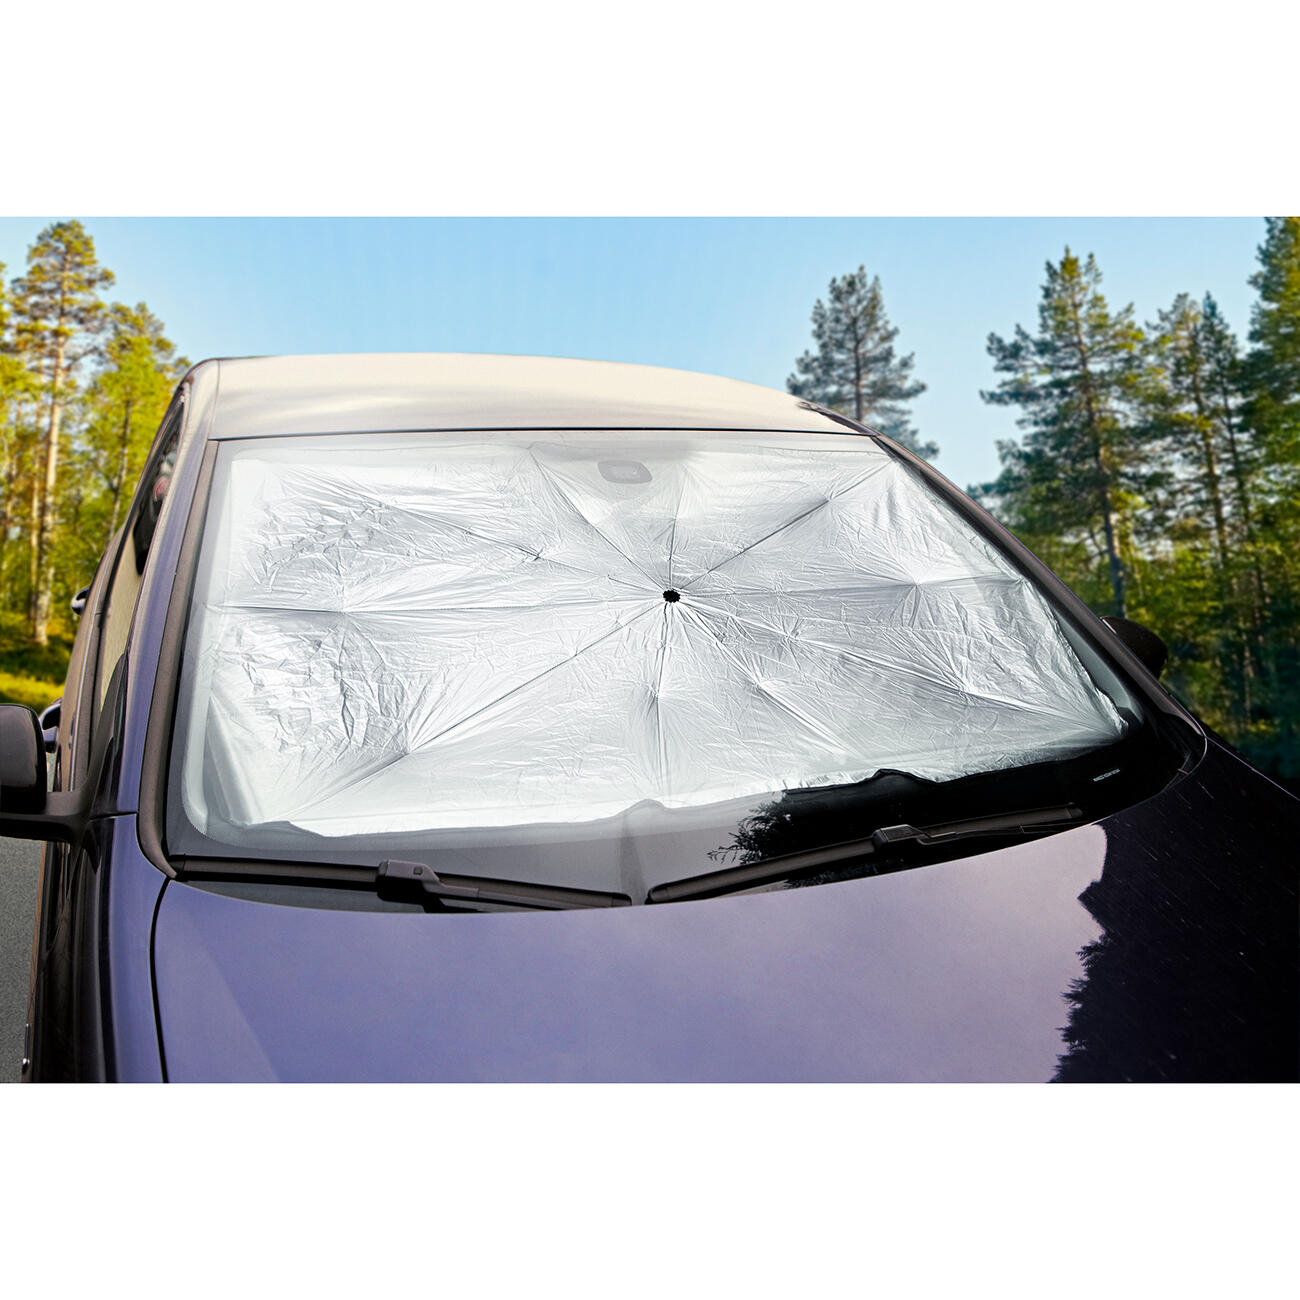 Faltbare Auto Sonnenschirm Regenschirm Typ Sonnenschutz für Auto Fenster  Sommer Sonnenschutz Wärmedämmung Tuch für Auto Front Schattierung -  AliExpress